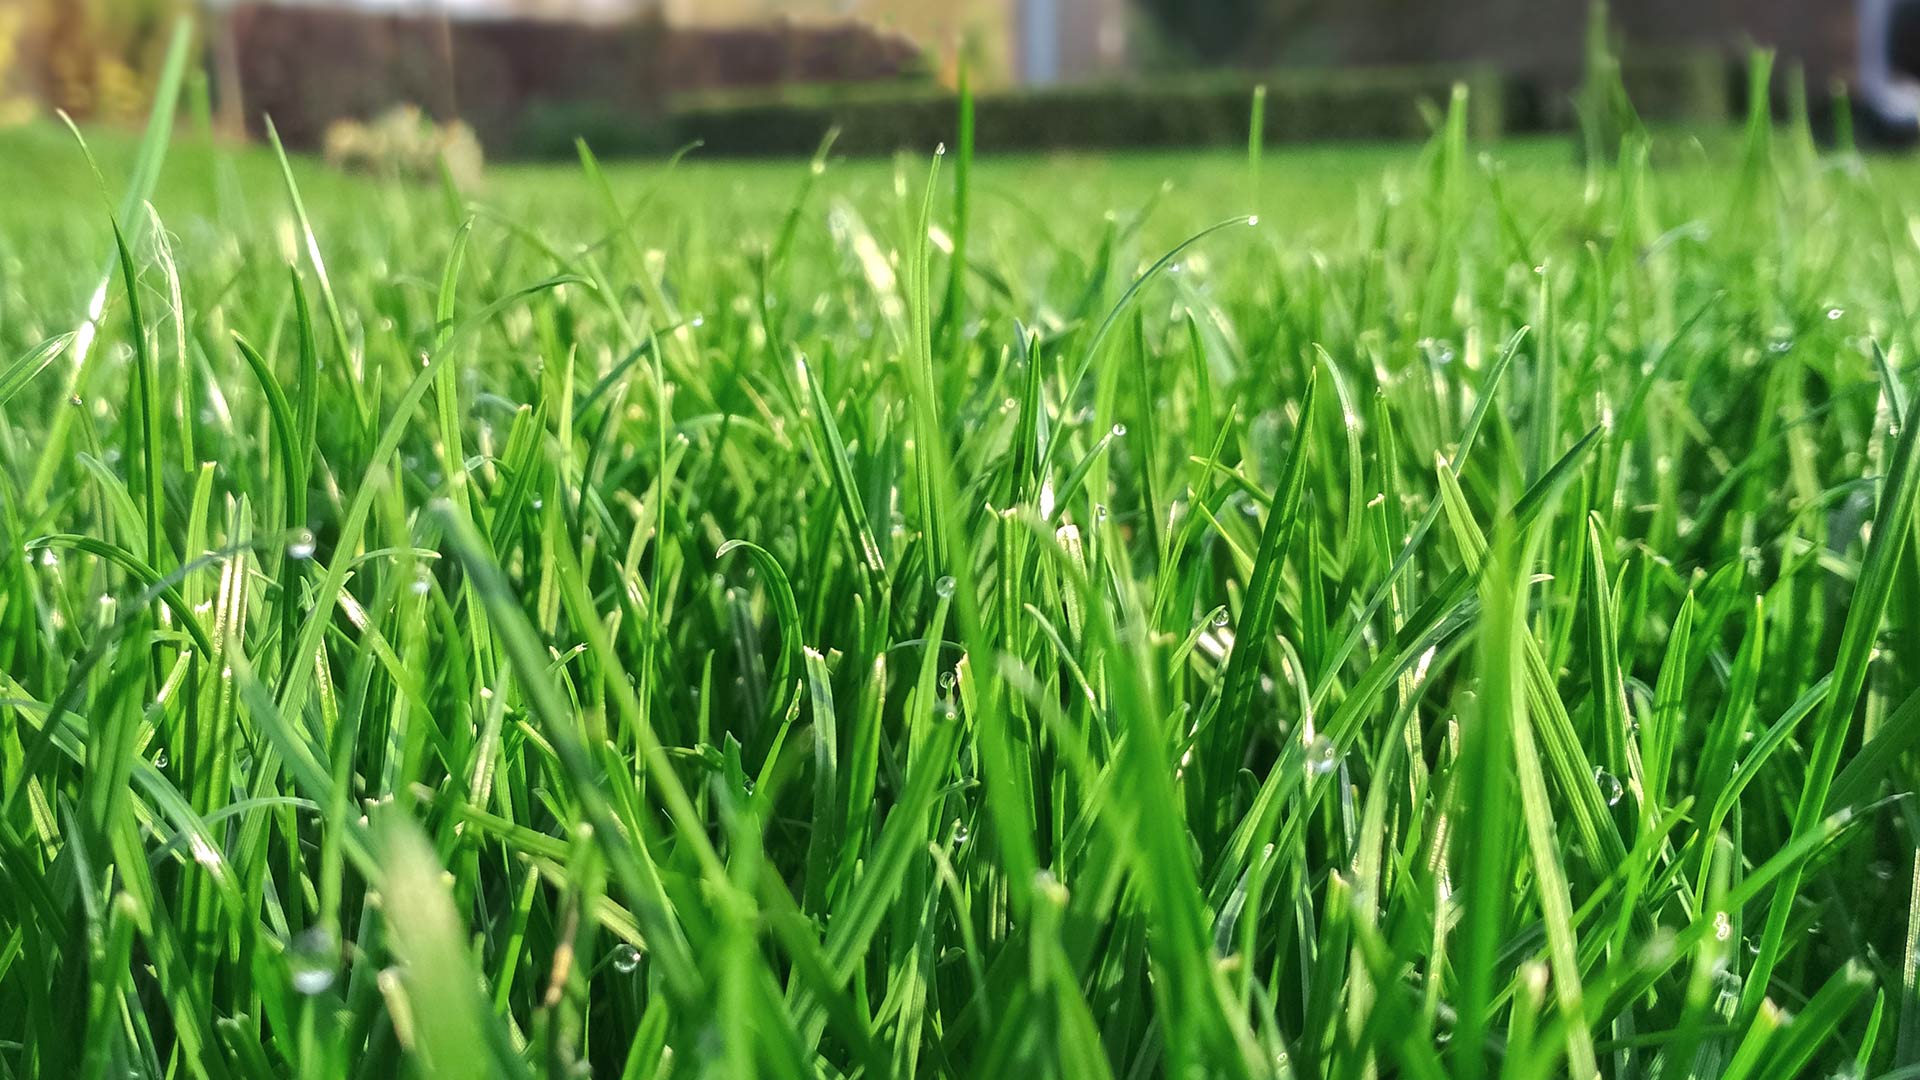 Healthy grass blades in a lawn in Gallatin, TN.